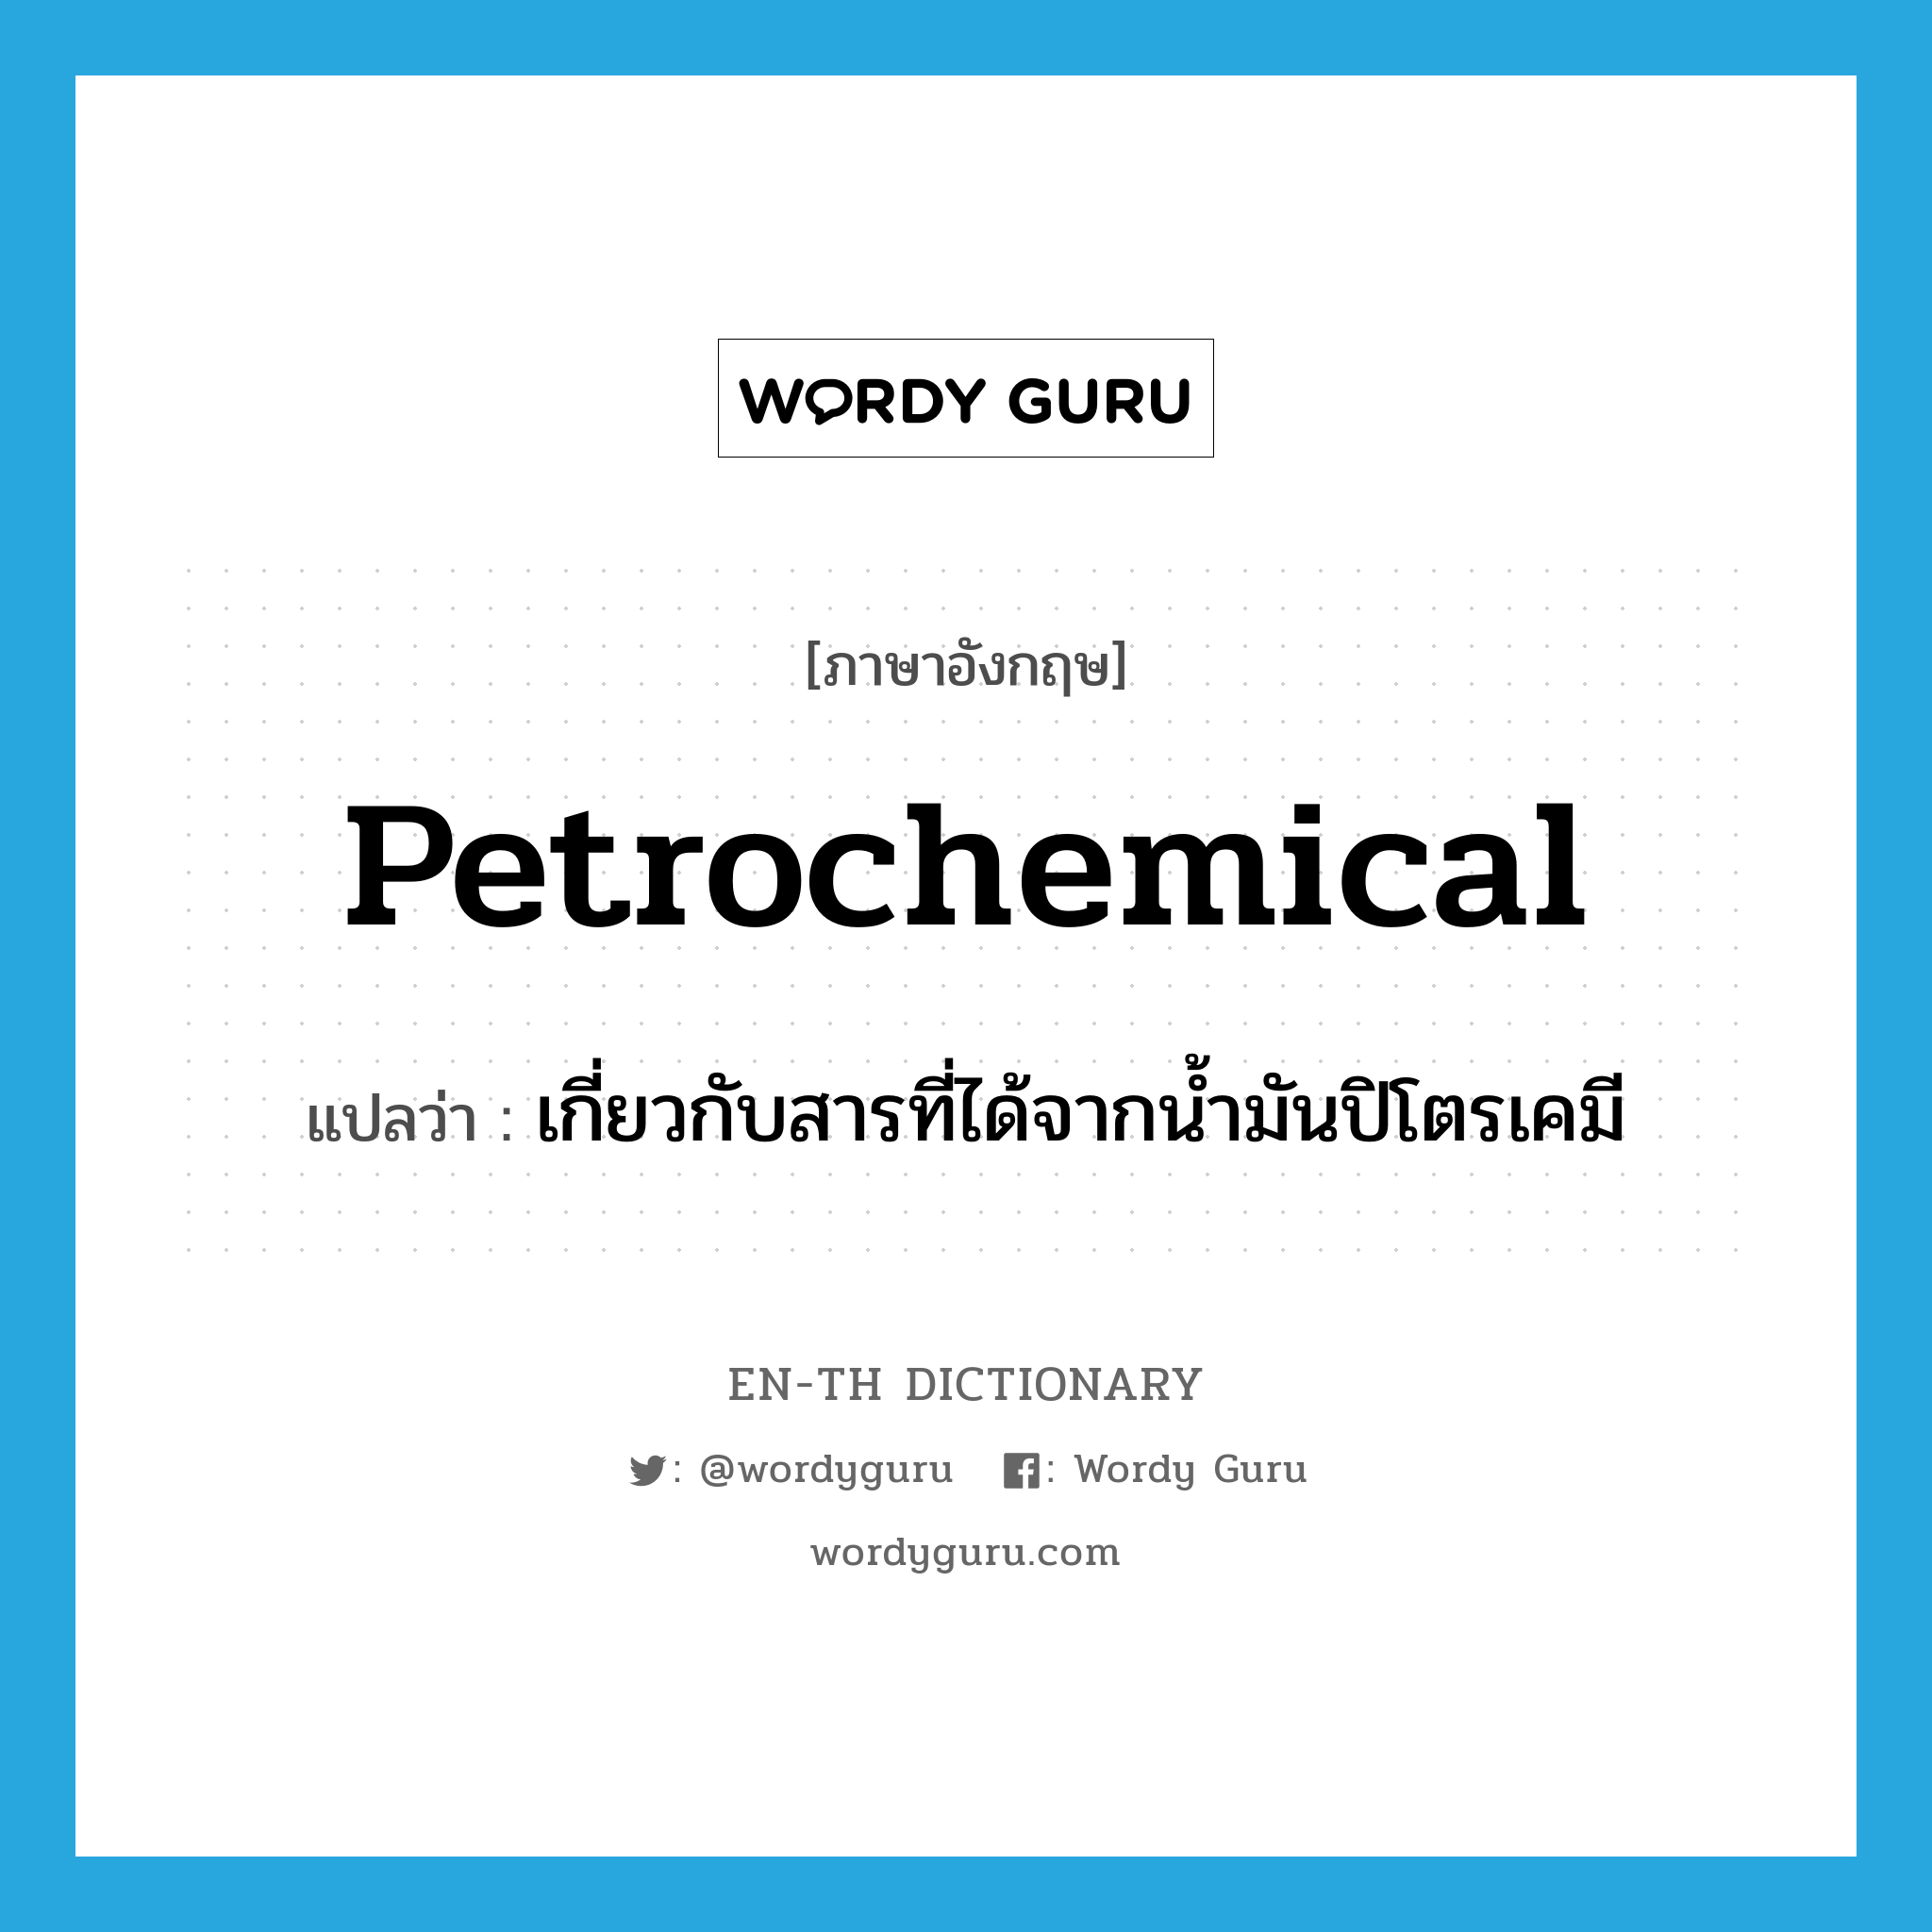 เกี่ยวกับสารที่ได้จากน้ำมันปิโตรเคมี ภาษาอังกฤษ?, คำศัพท์ภาษาอังกฤษ เกี่ยวกับสารที่ได้จากน้ำมันปิโตรเคมี แปลว่า petrochemical ประเภท ADJ หมวด ADJ